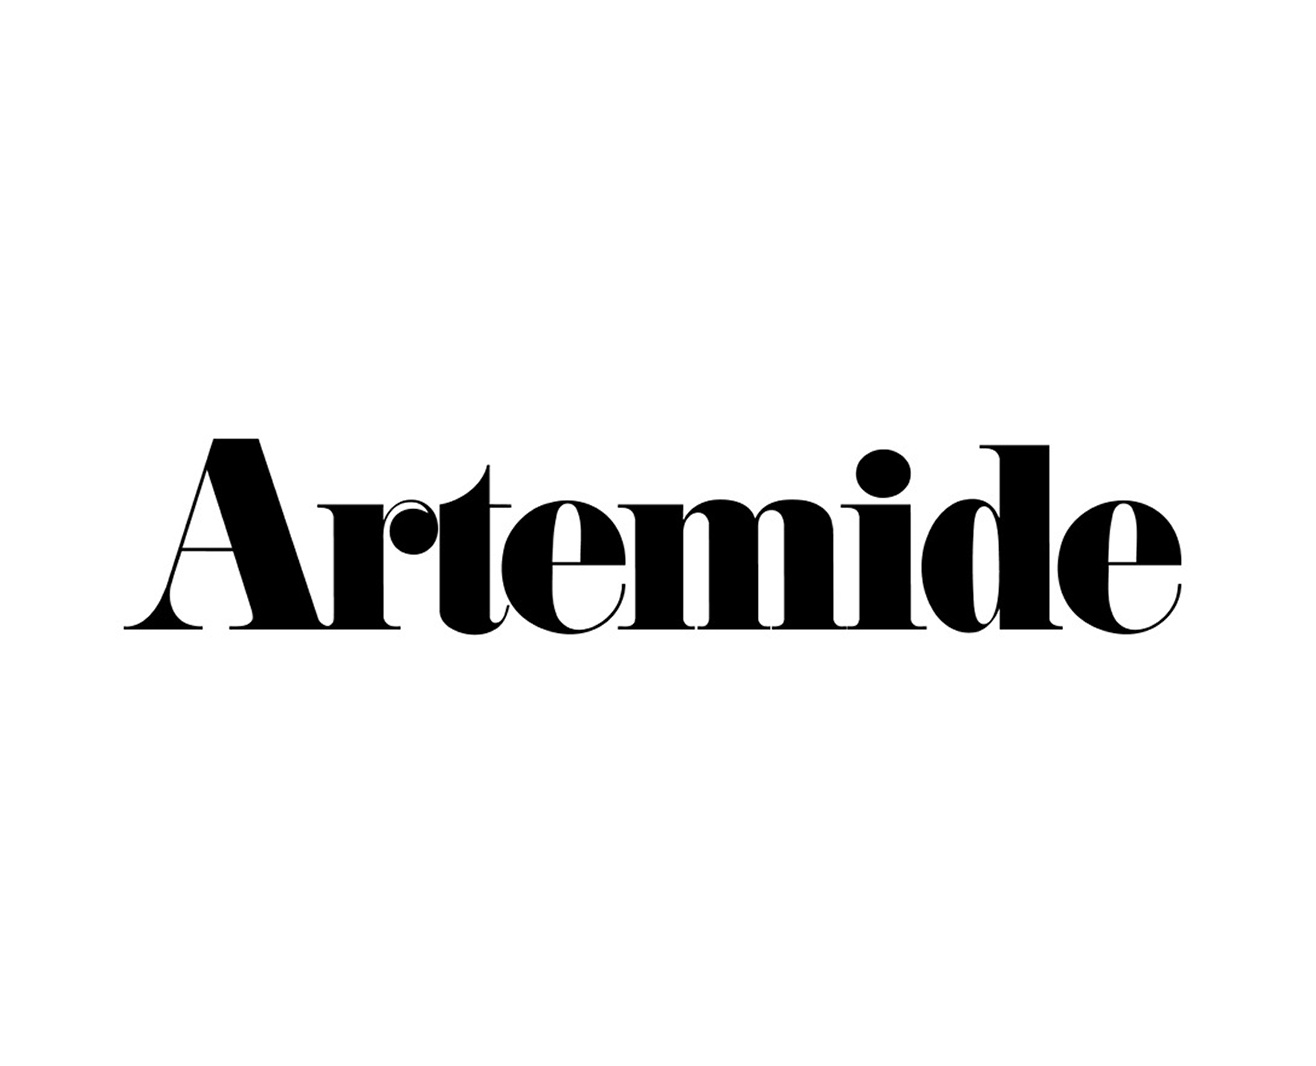 artemide